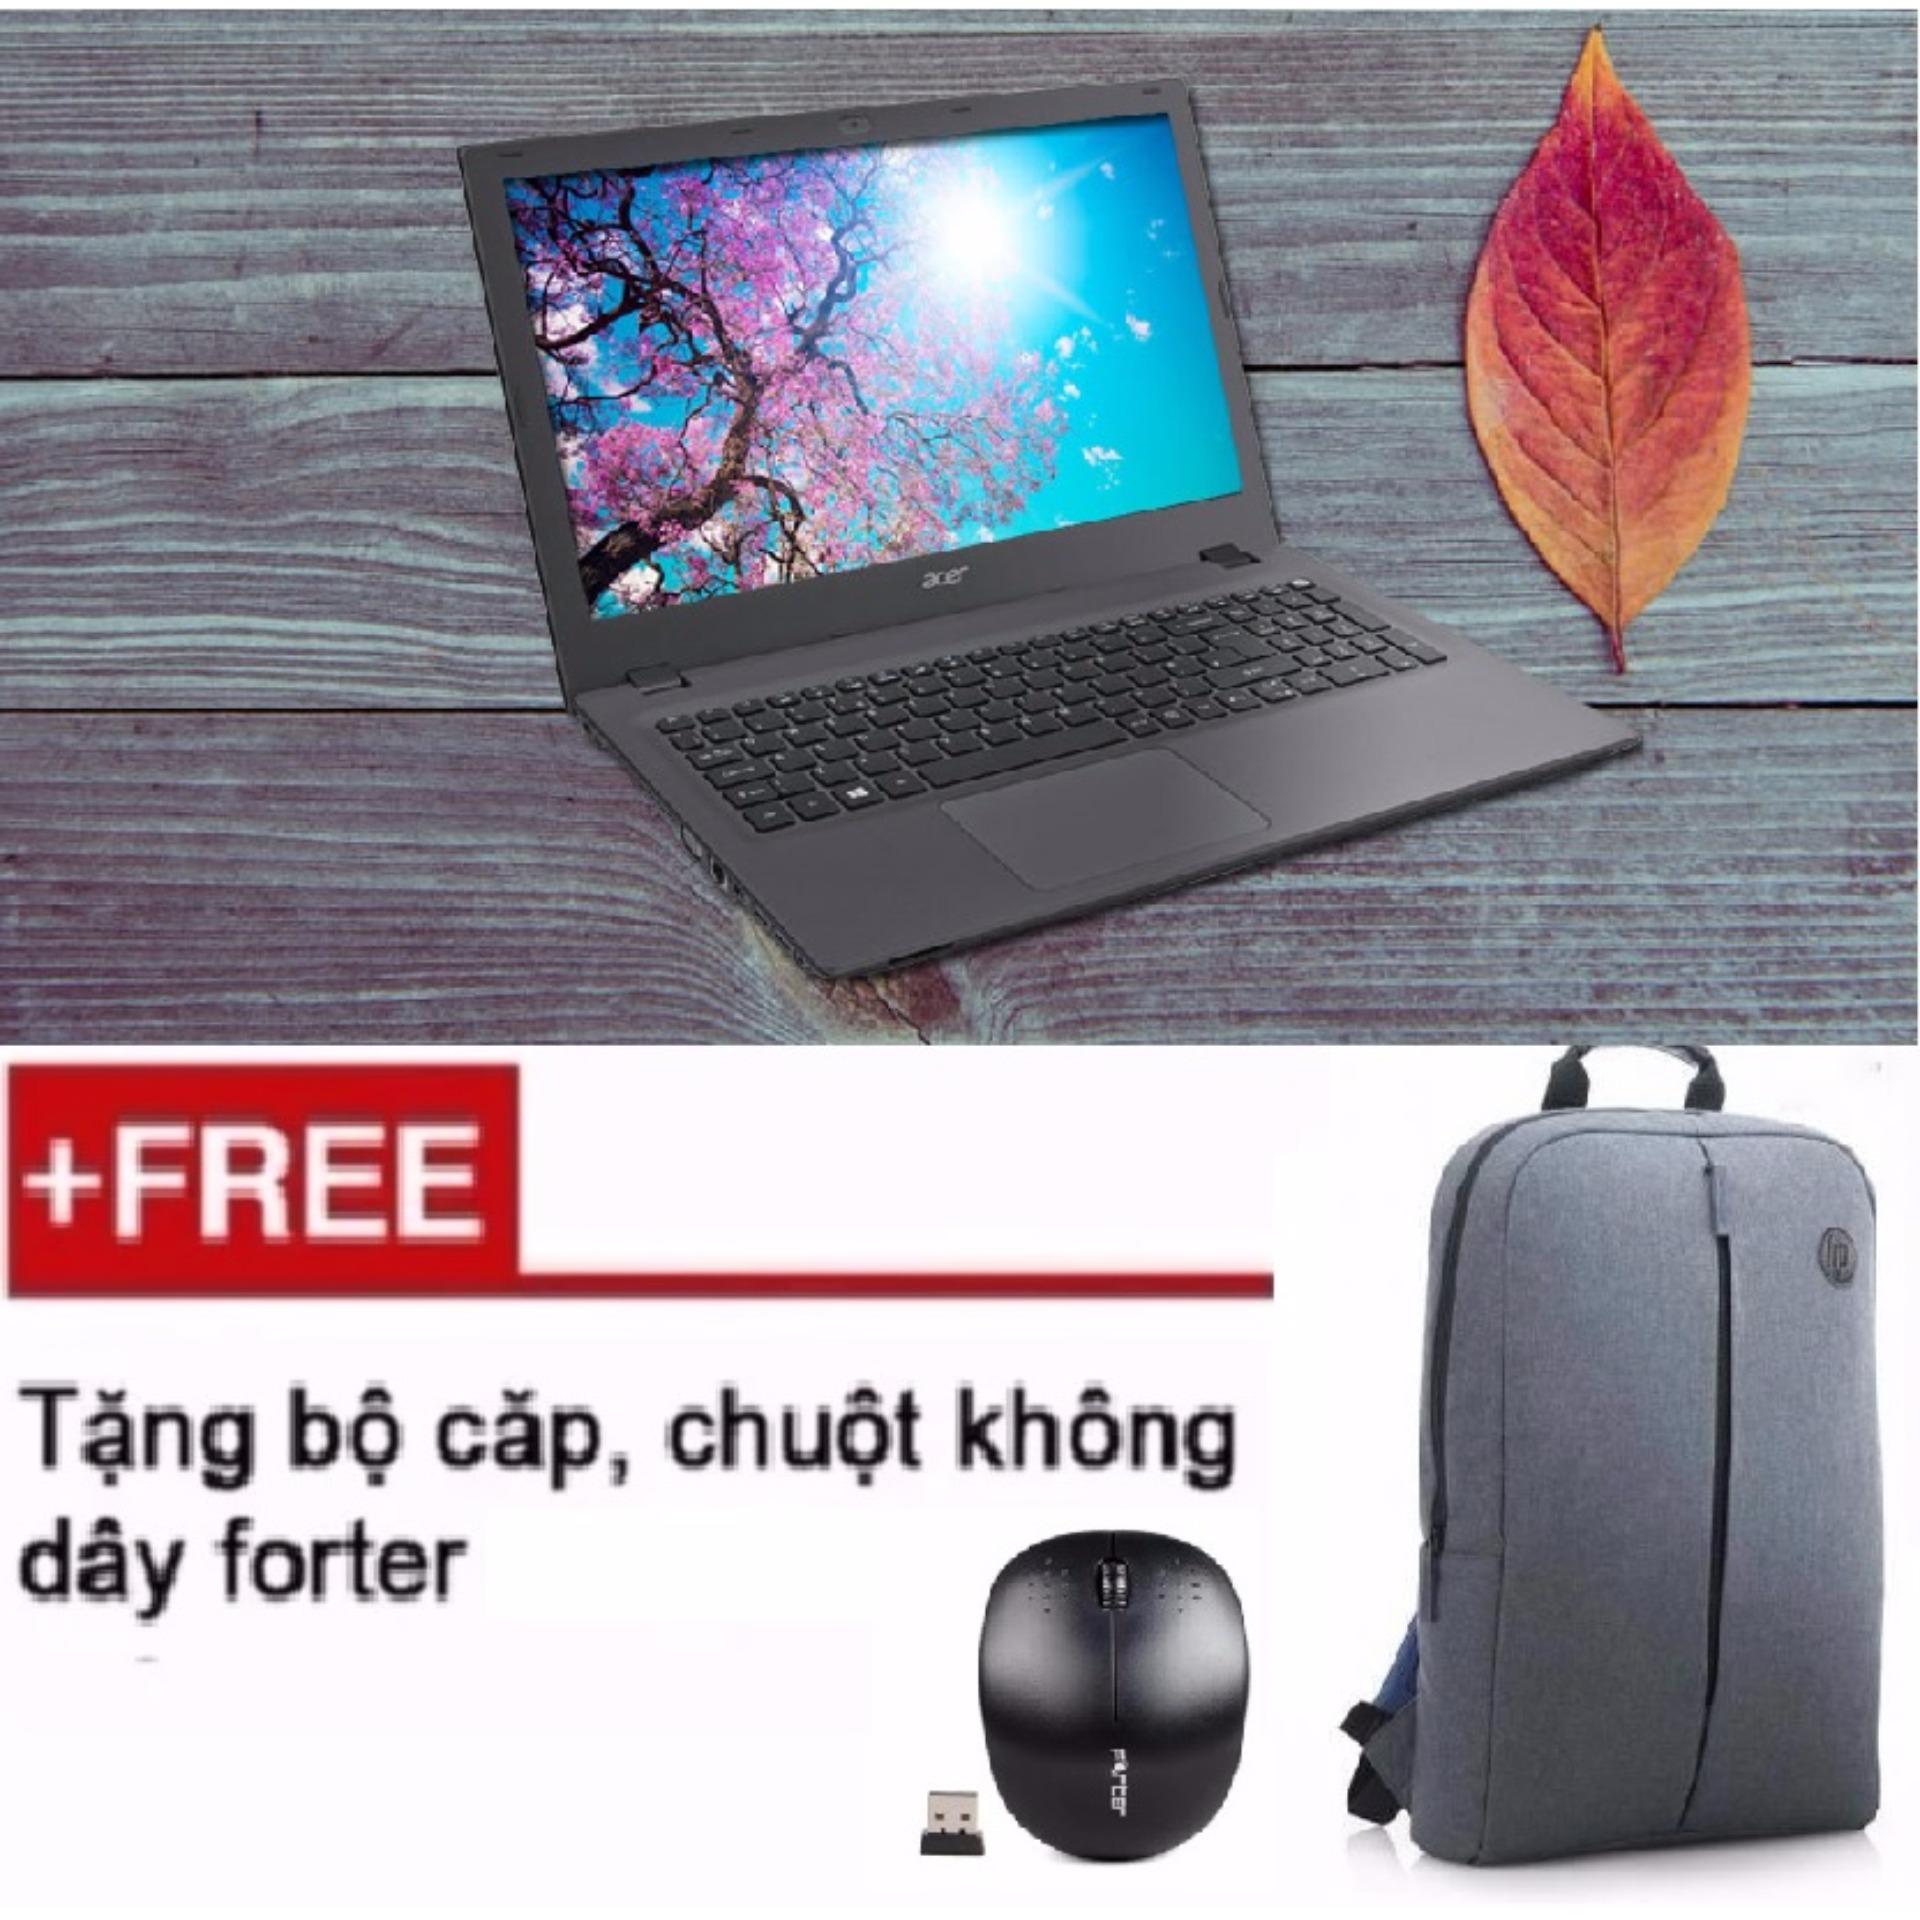 Laptop Acer Aspire E5-573-34 i3 ram 4gb giá sinh viên hàng nhập khẩu